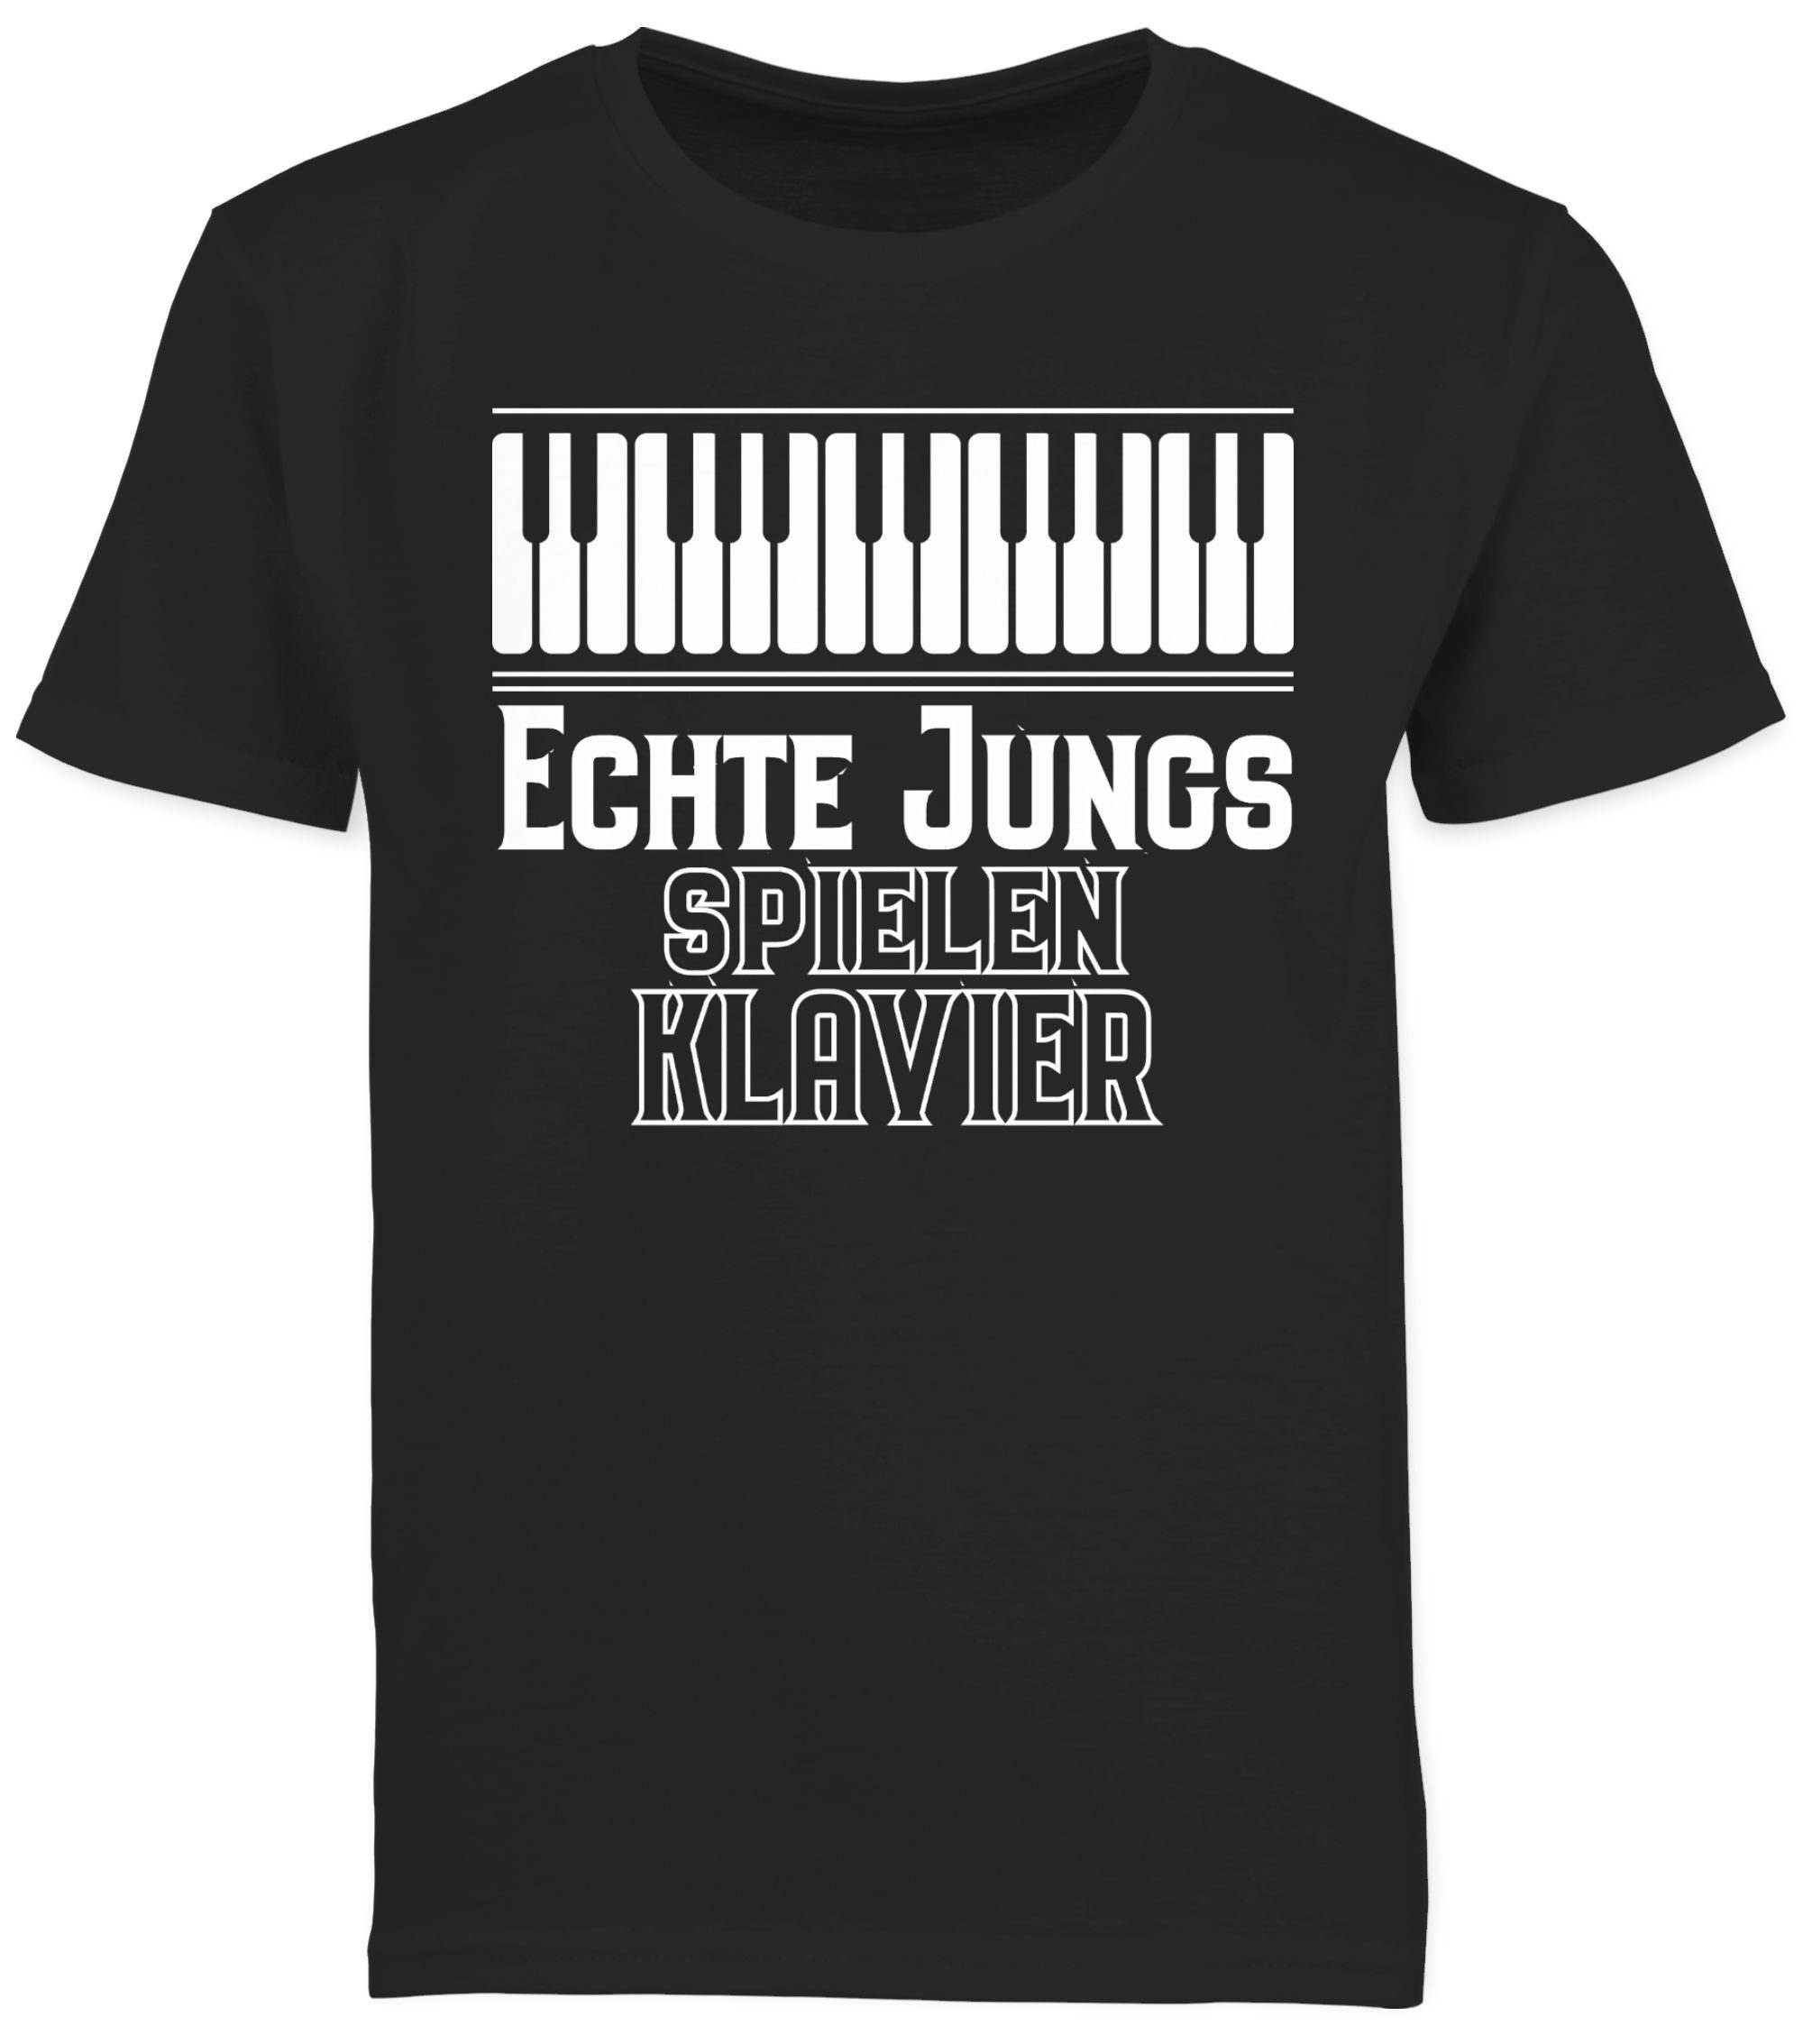 Jungs 2 spielen Kinder Echte Sprüche Schwarz Statement T-Shirt Shirtracer Klavier